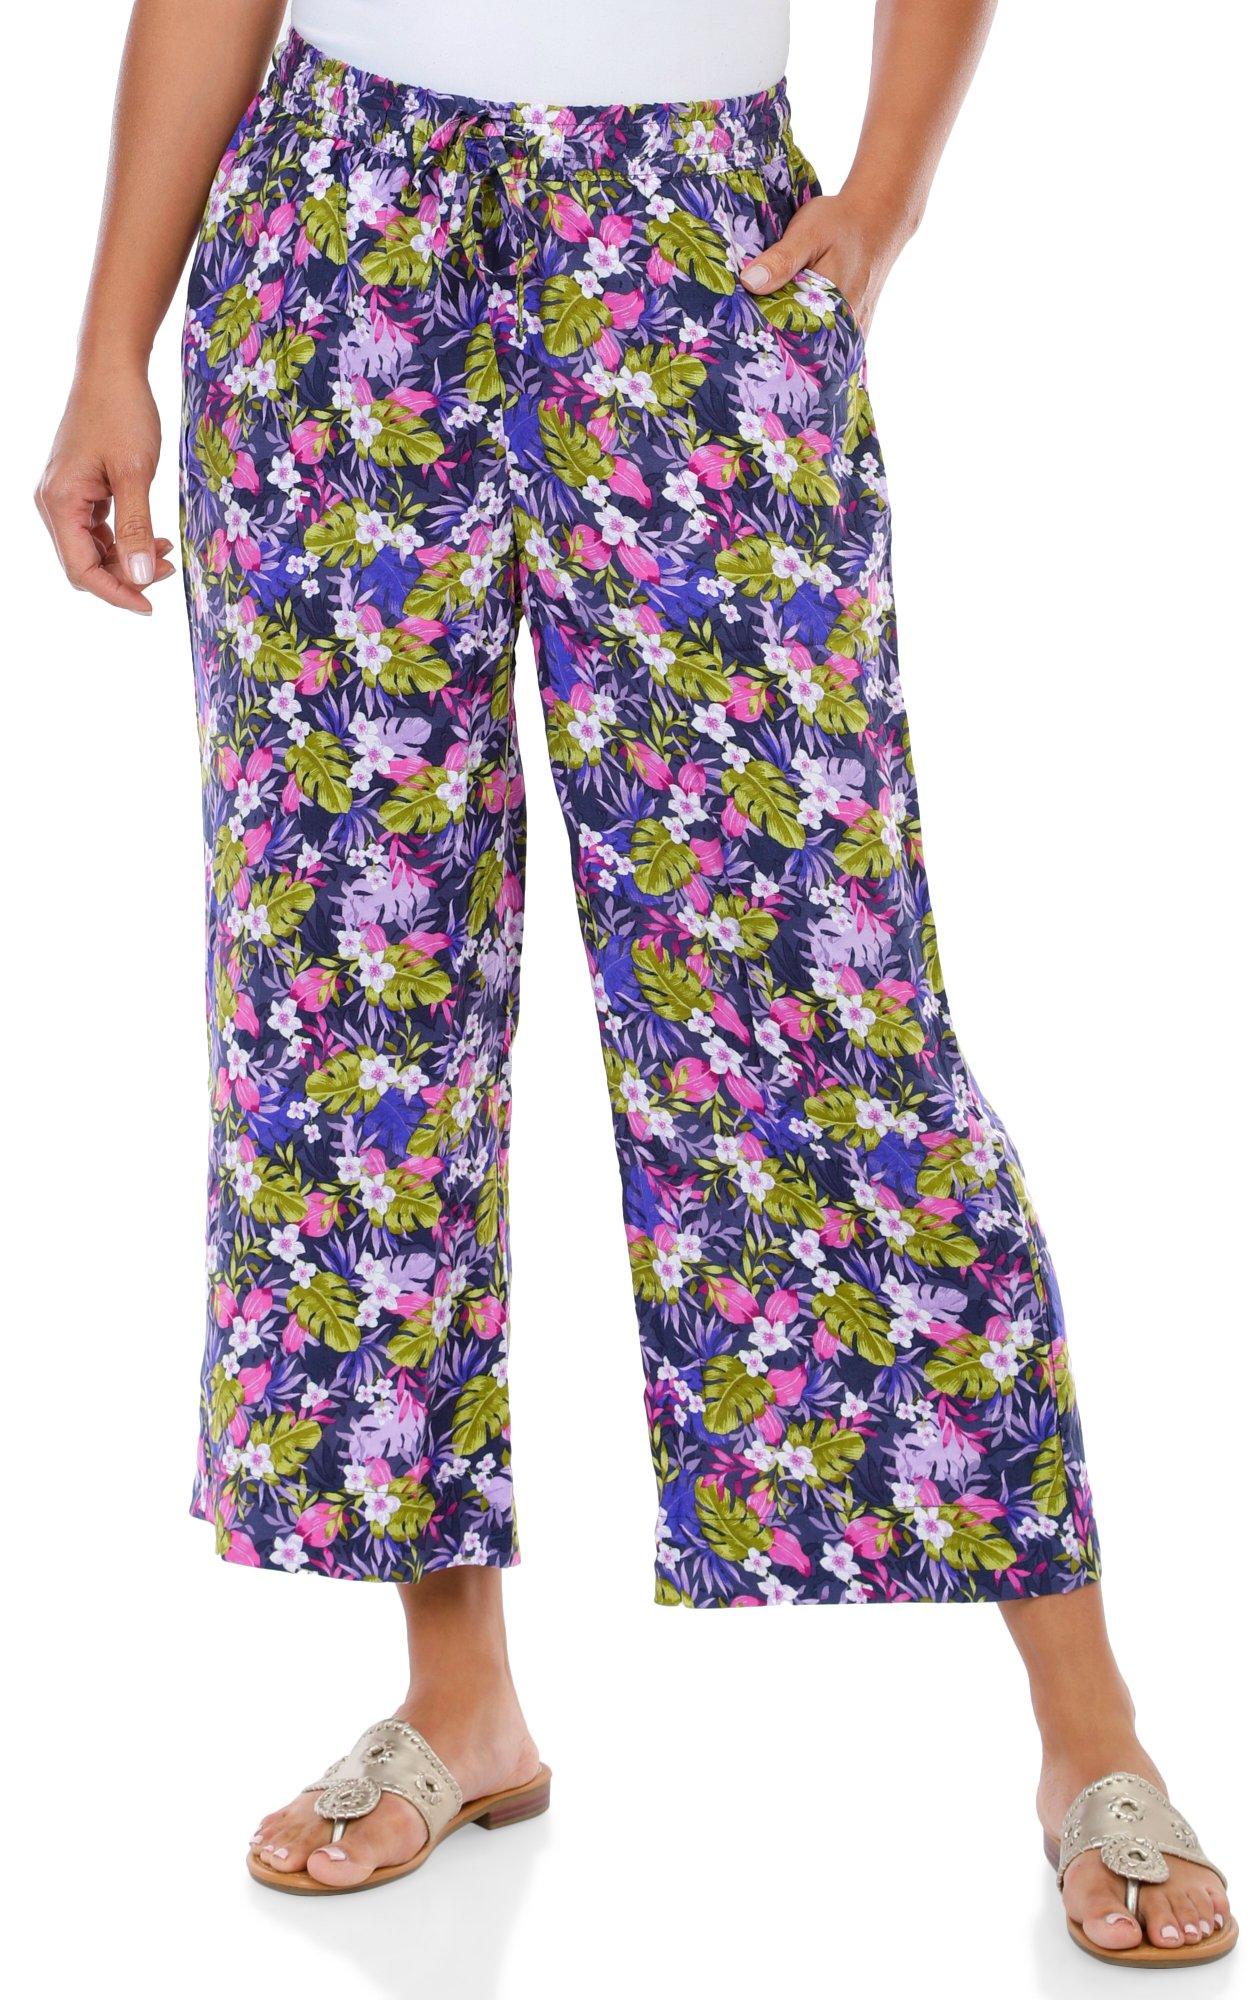 Women's Twilight Floral Capri Pants